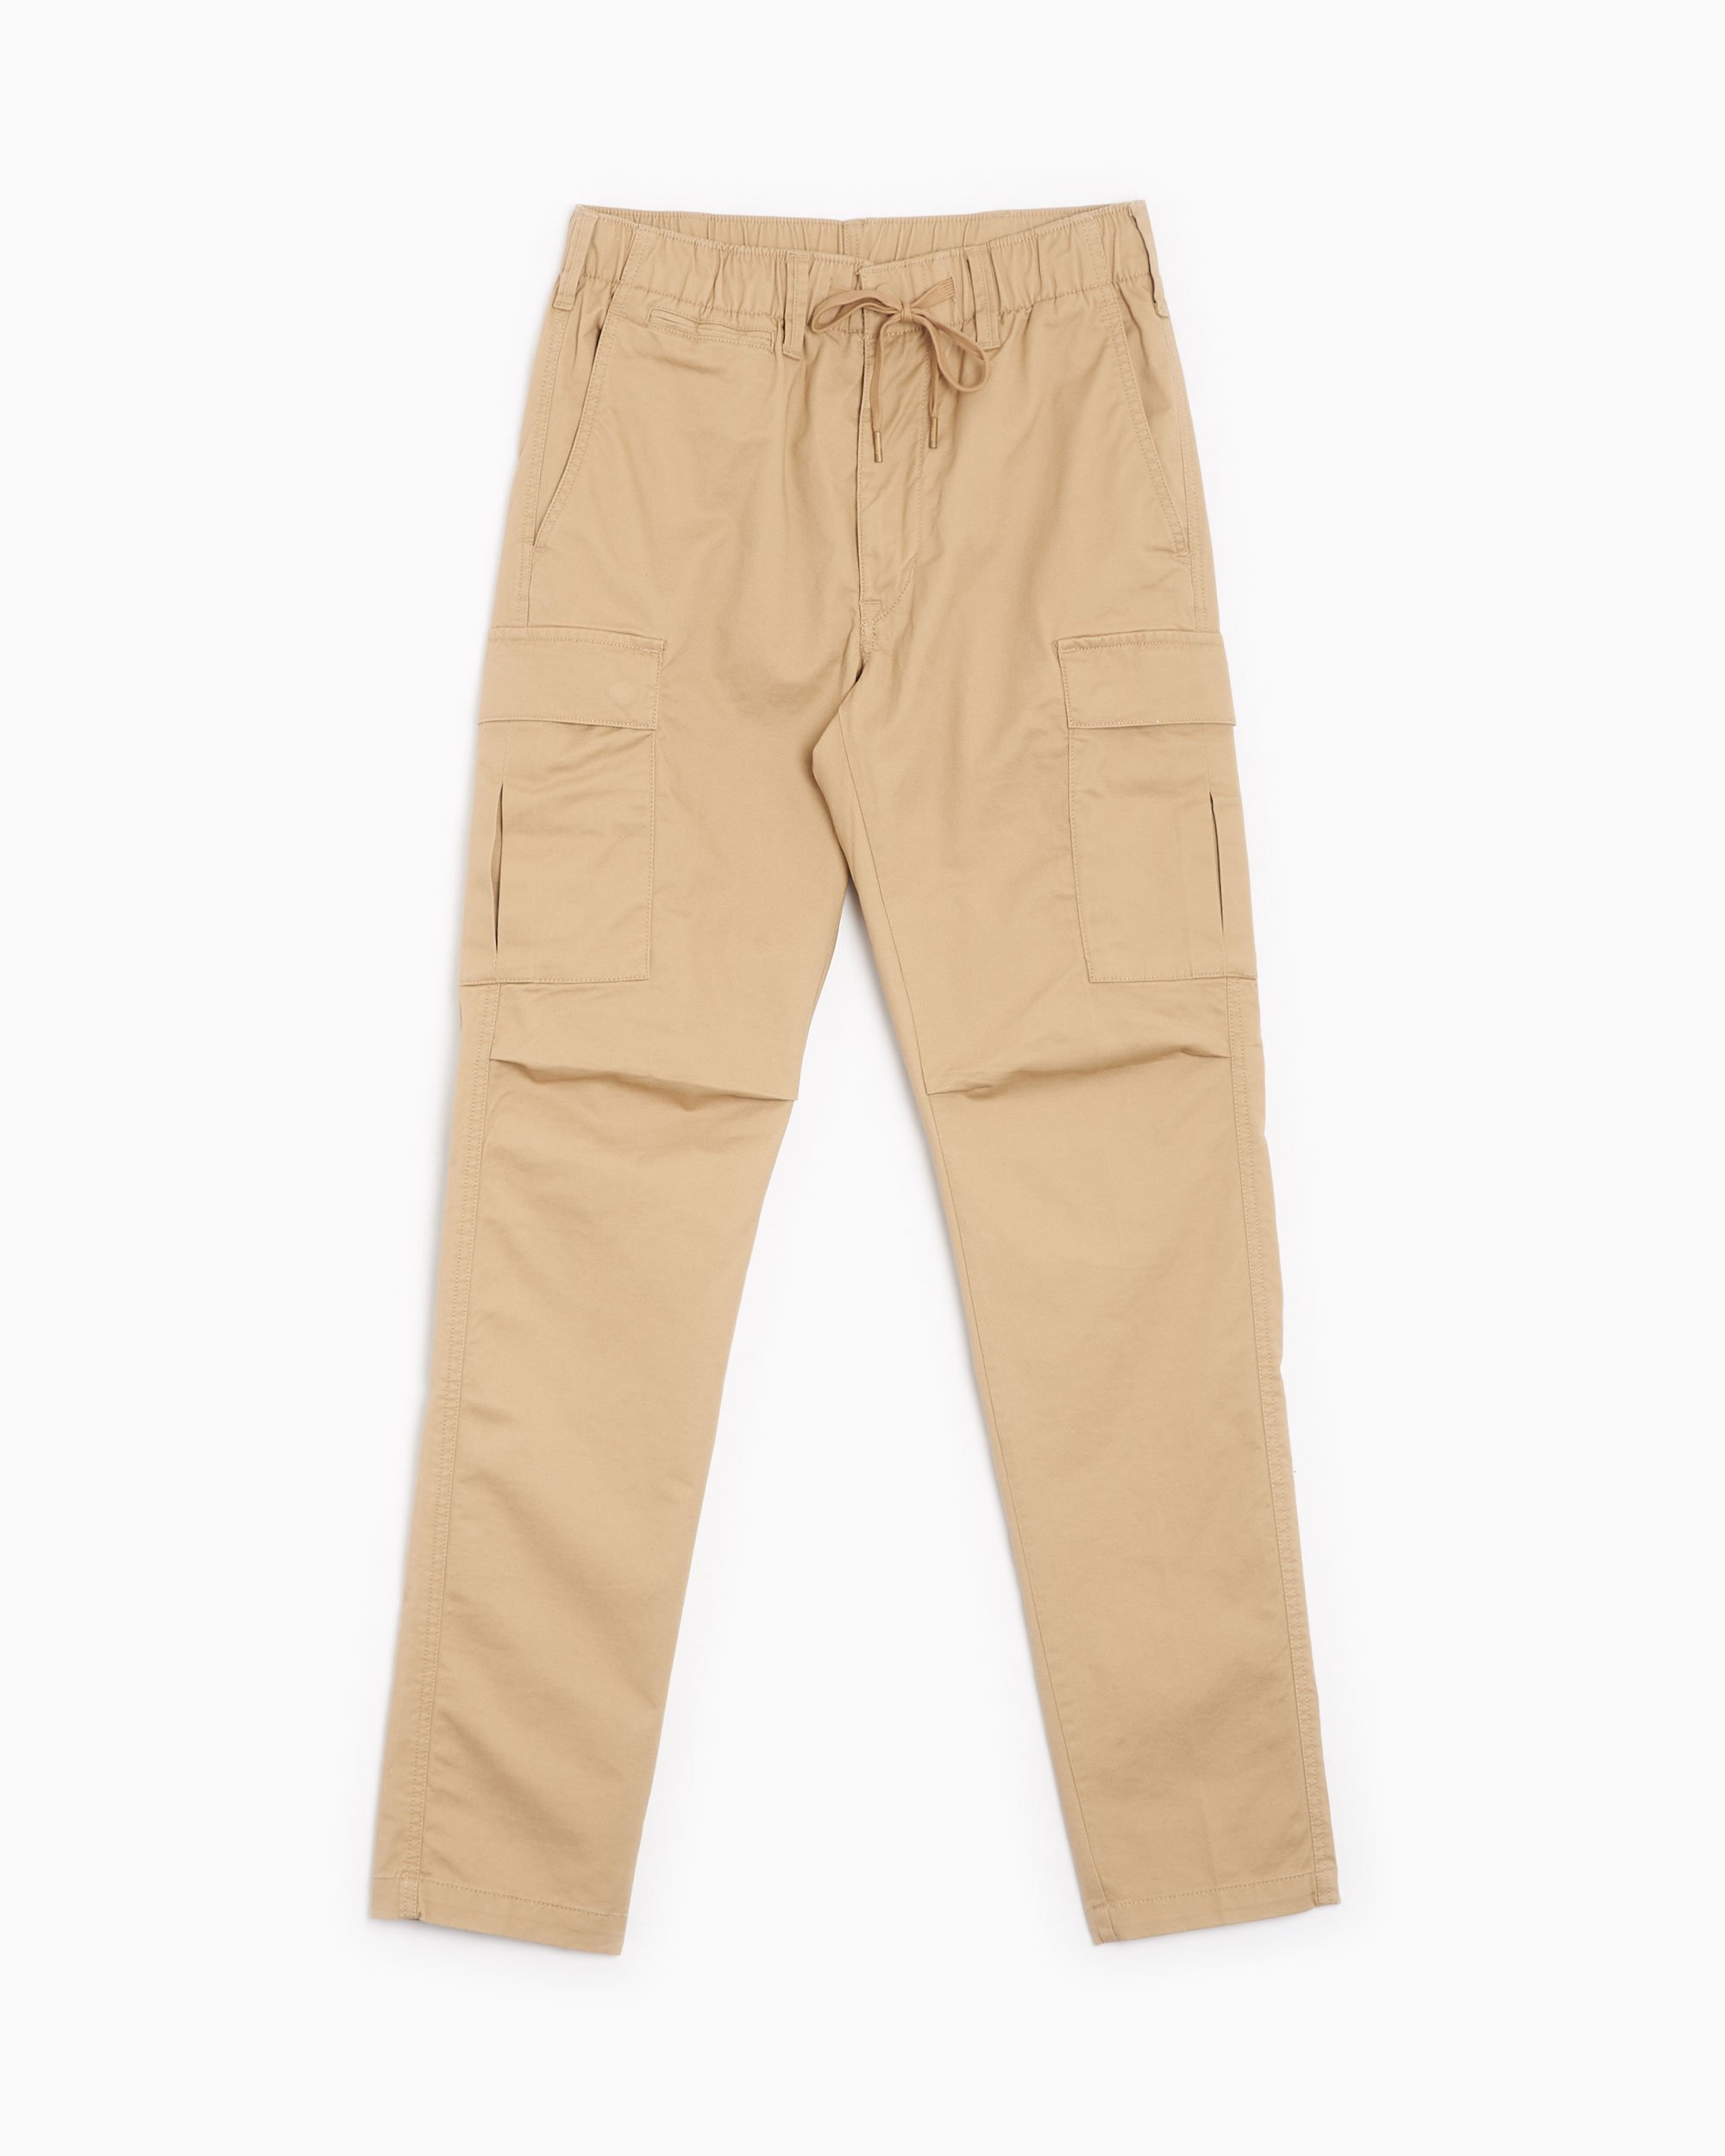 Polo Ralph Lauren Men's Cargo Pants Beige 710835172011| Comprar Online ...